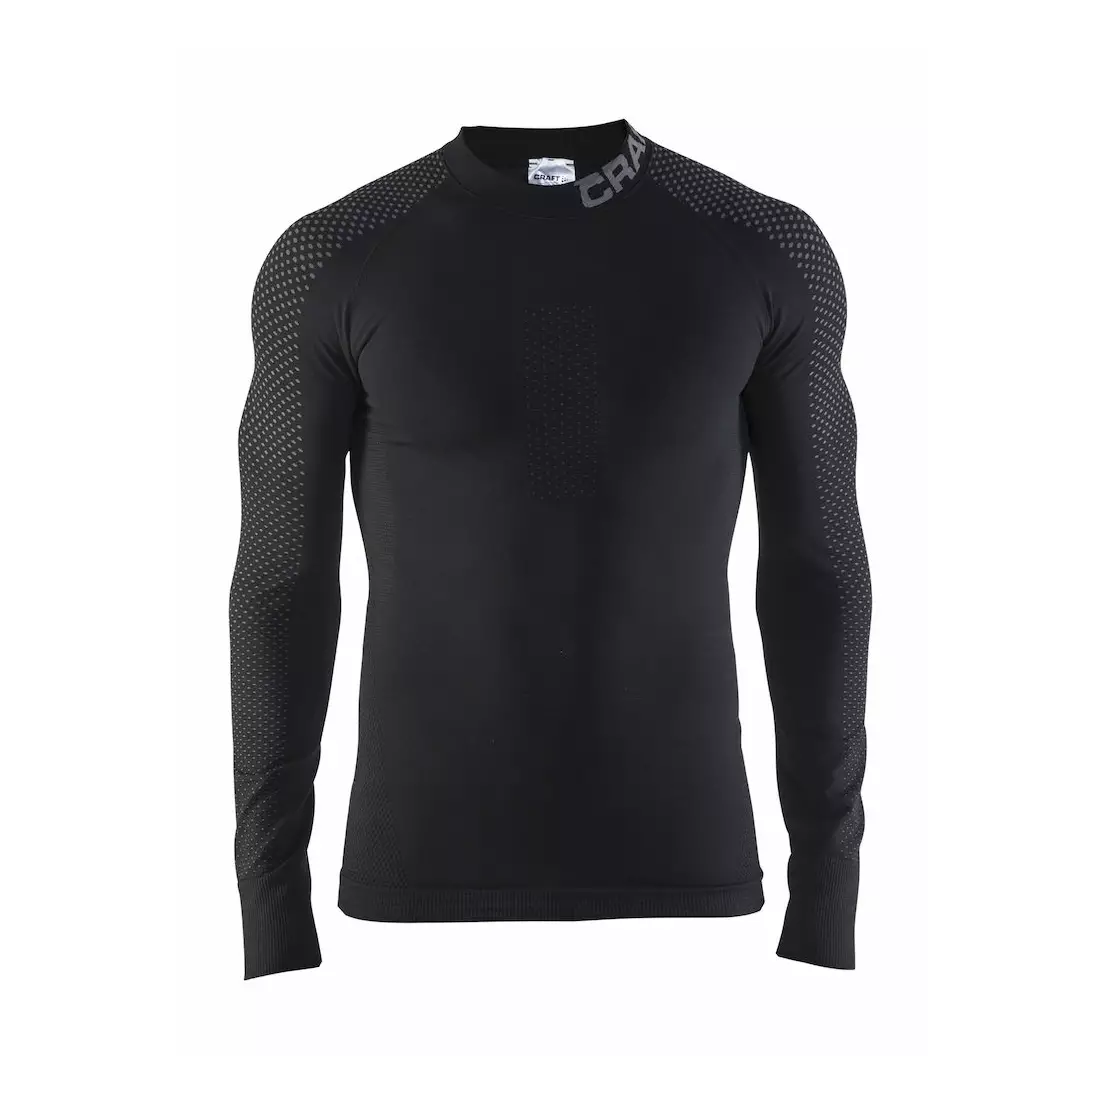 CRAFT WARM INTENSITY underwear men's T-shirt, black 1905350-999985